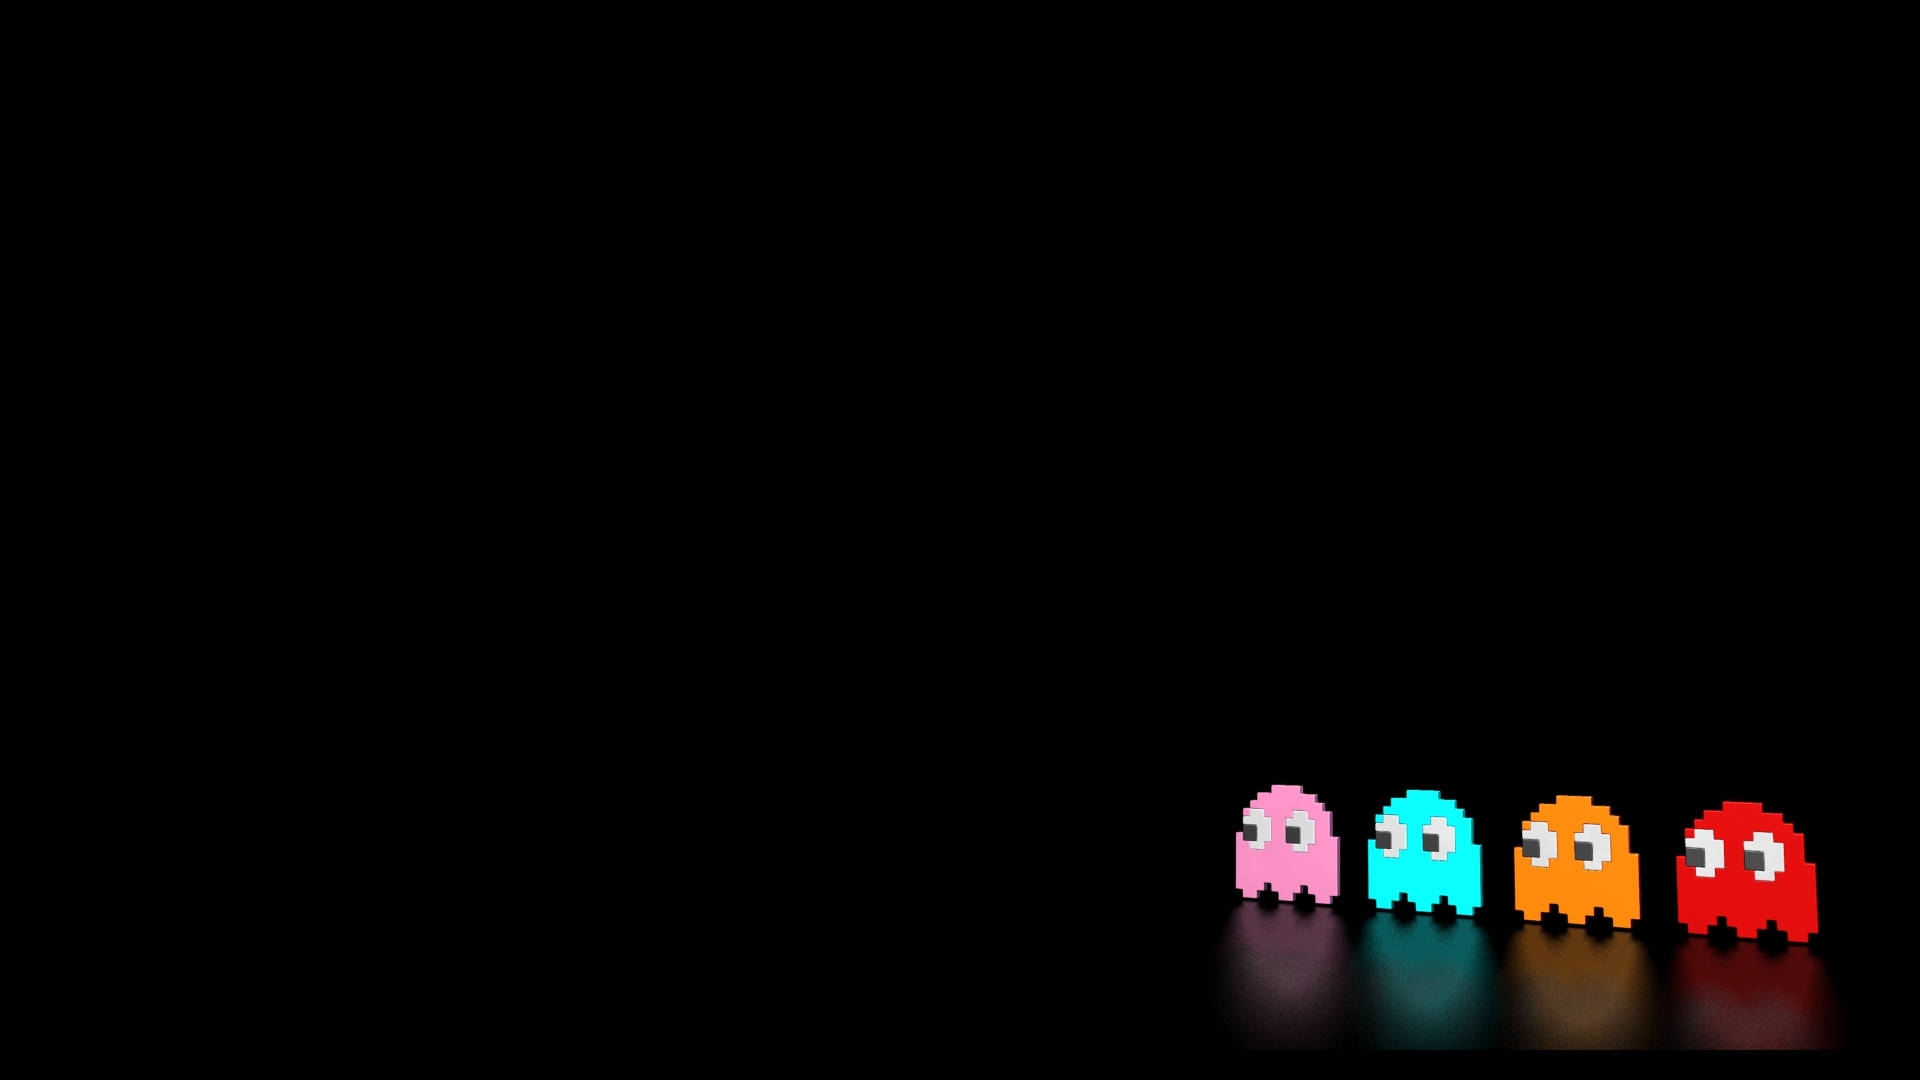 Färggladaspökkaraktärer Från Pac-man-videospel. Wallpaper